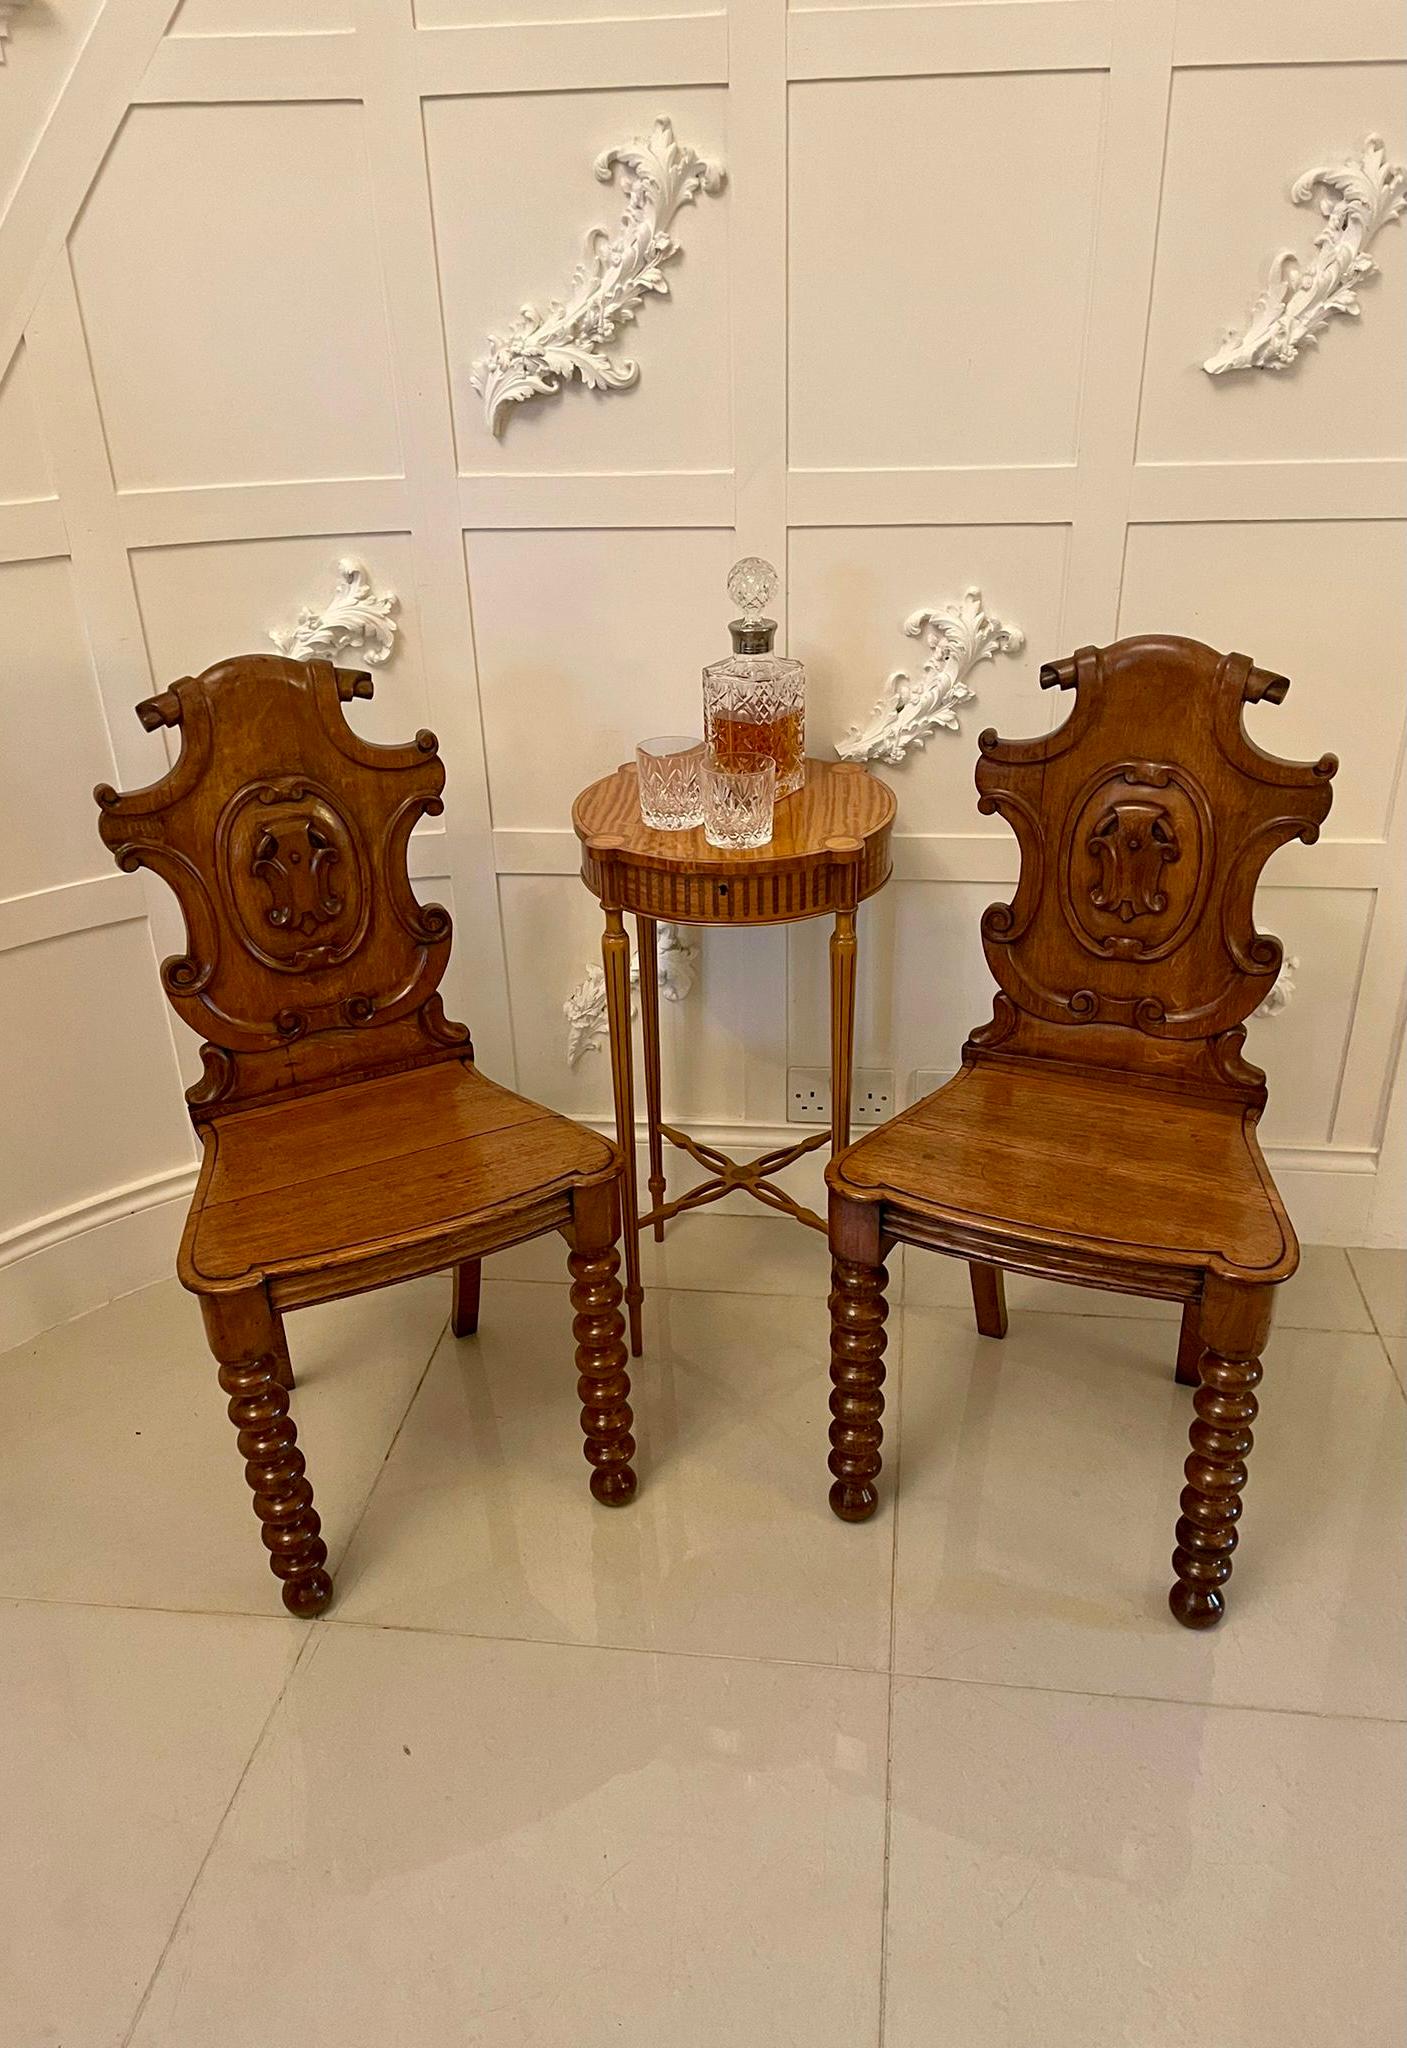 Ein Paar antiker viktorianischer geschnitzter Eichenstühle mit geschnitzten Eichenholz-Rückenlehnen, geformten Sitzen aus massivem Eichenholz und auf ungewöhnlich gedrechselten Vorderbeinen und ausgezogenen Hinterbeinen stehend.

Ein sehr hübsches